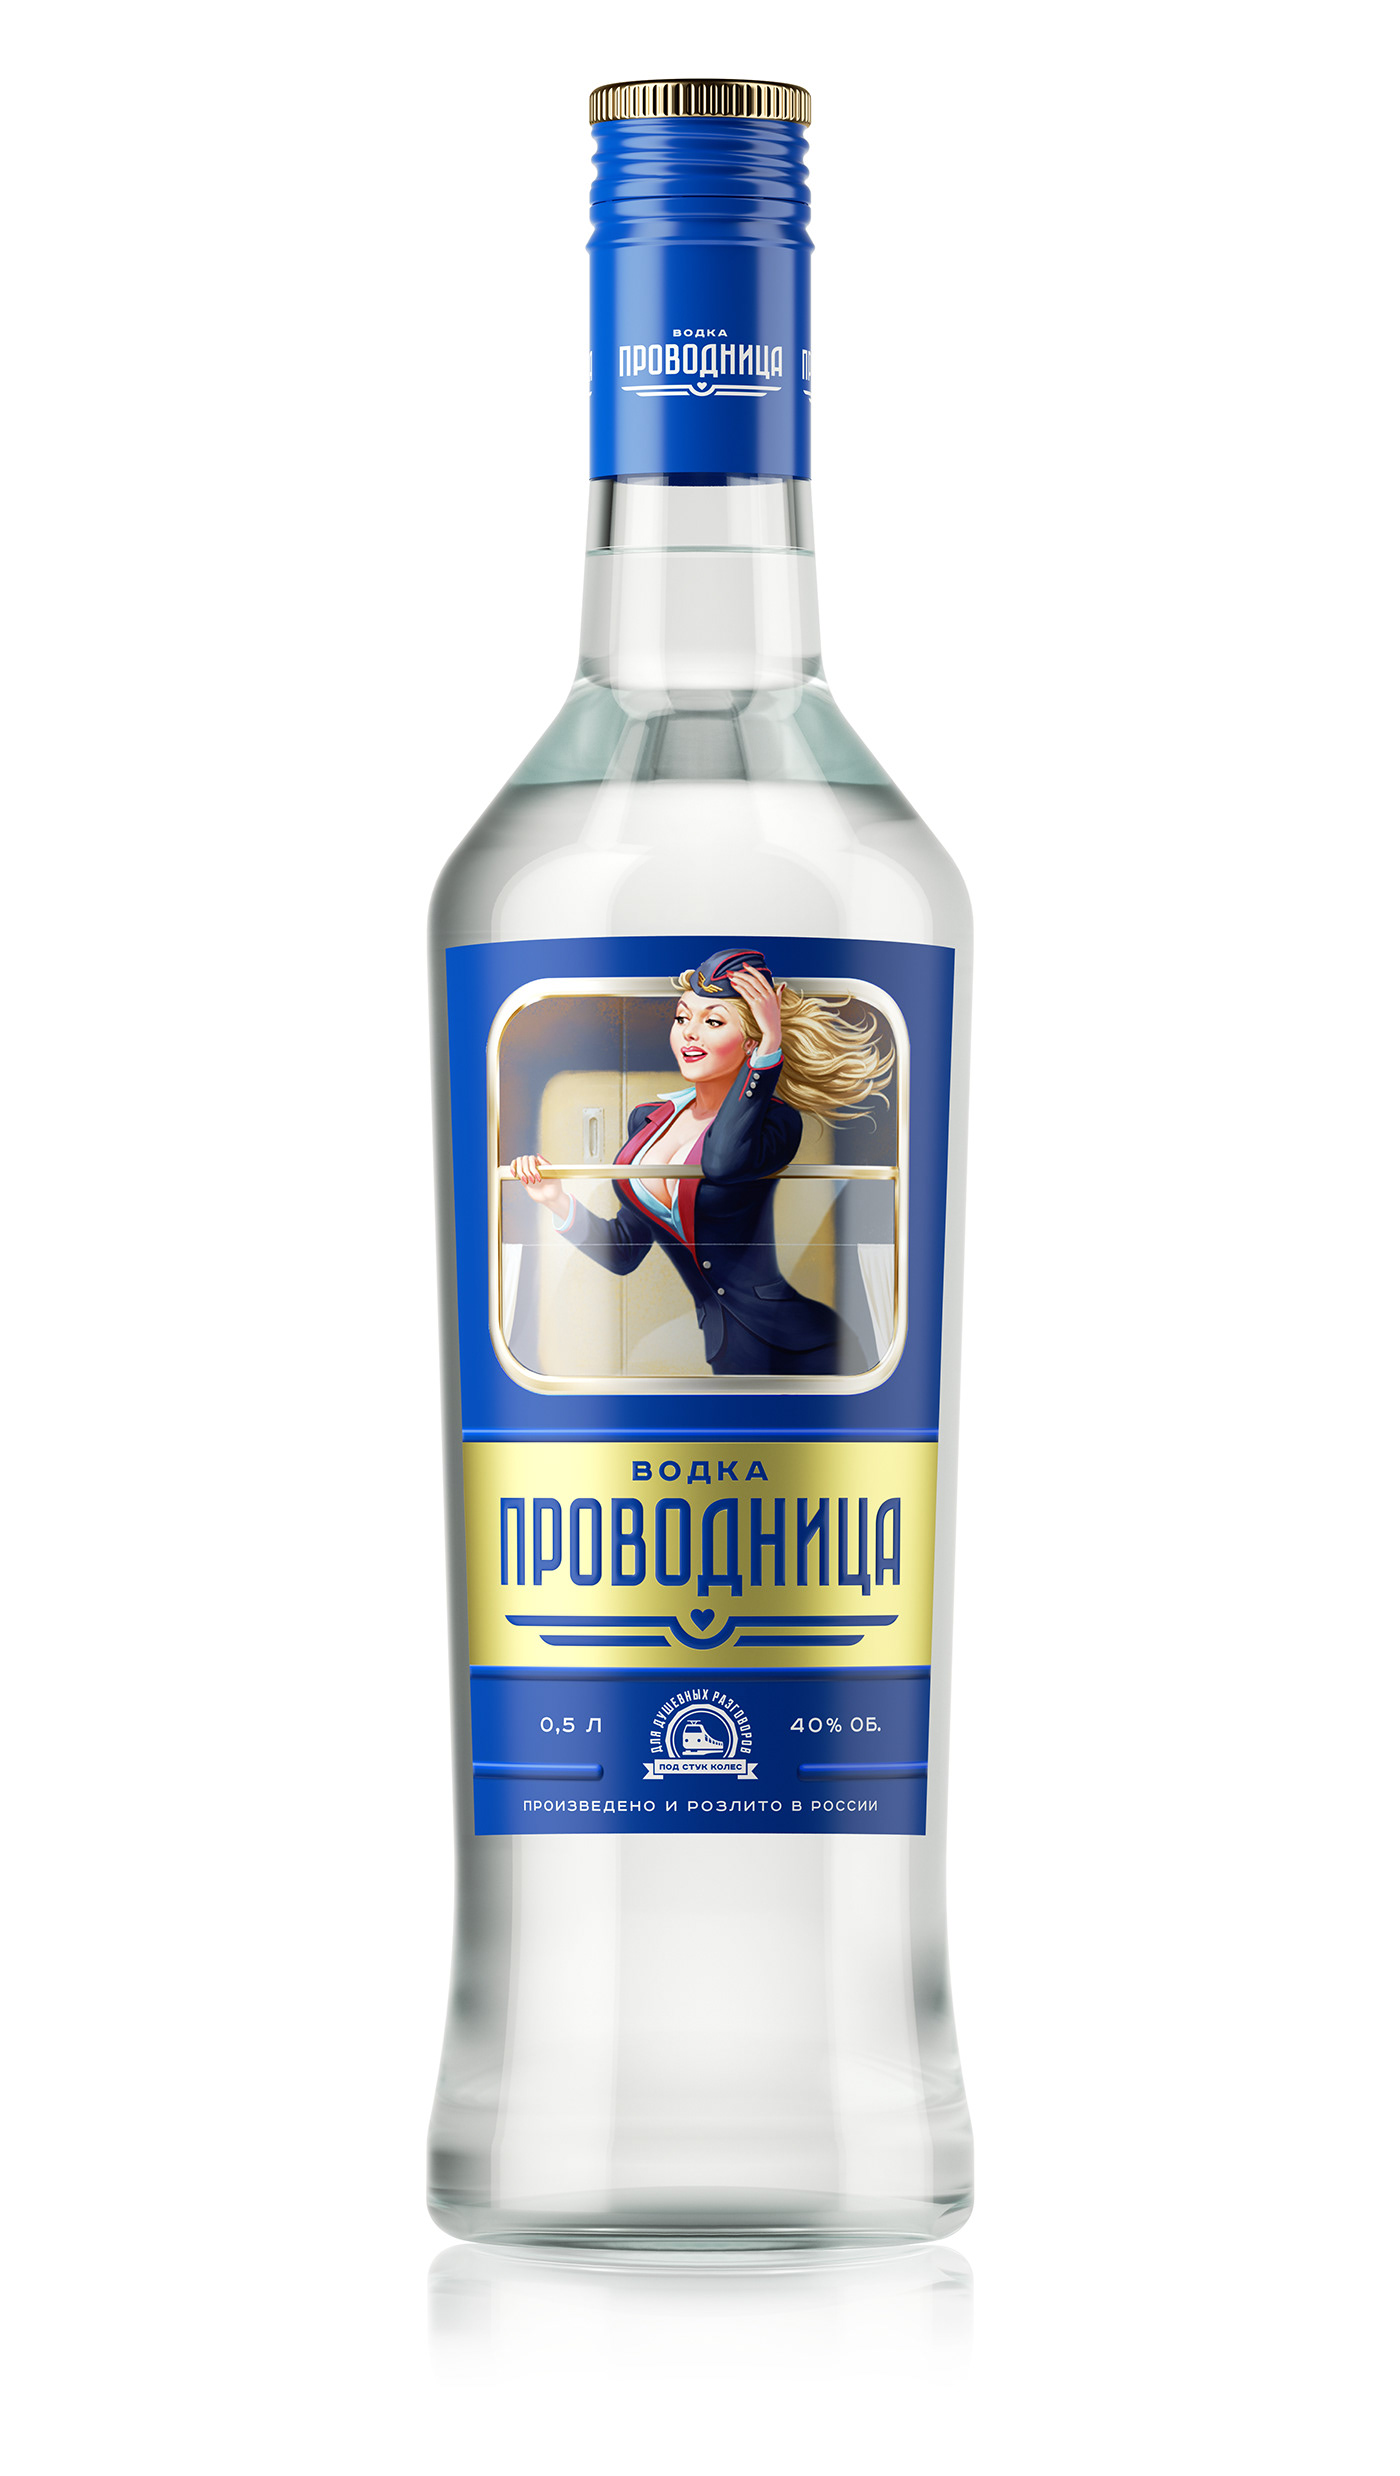 Vodka Packaging design uniqa brand водка упаковка дизайн бренд